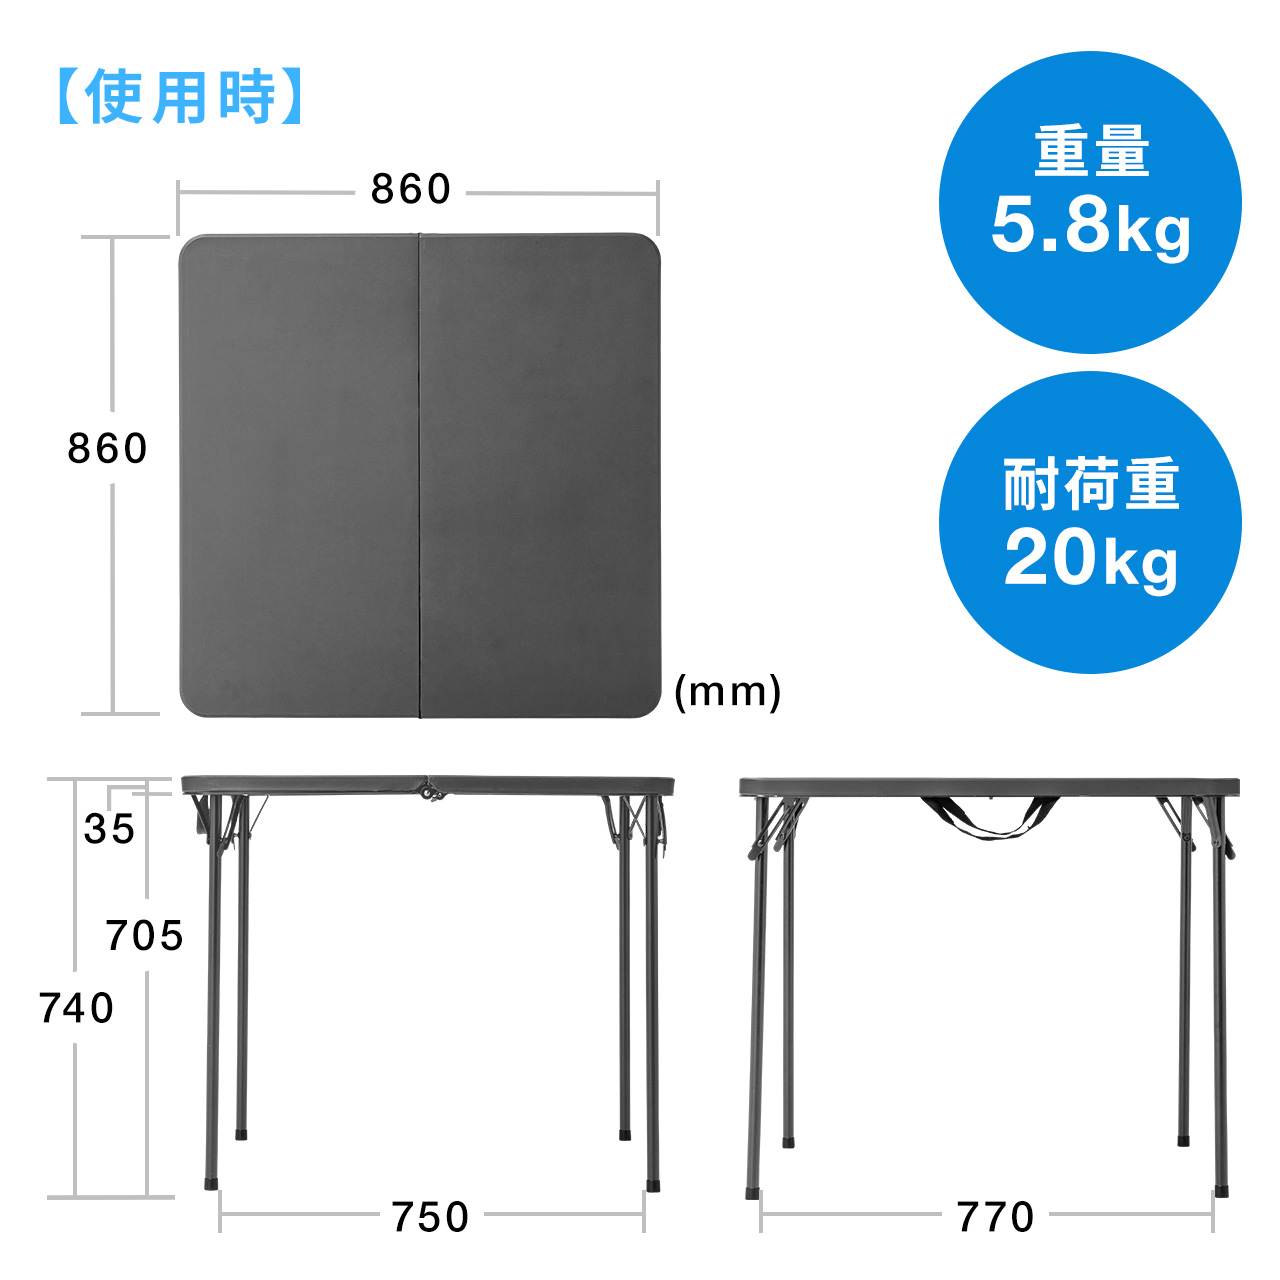 会議テーブル 折りたたみテーブル 省スペース W86cm D86cm 樹脂天板 簡単組立 持ち運び 取っ手付き グレー 100-FD013GY